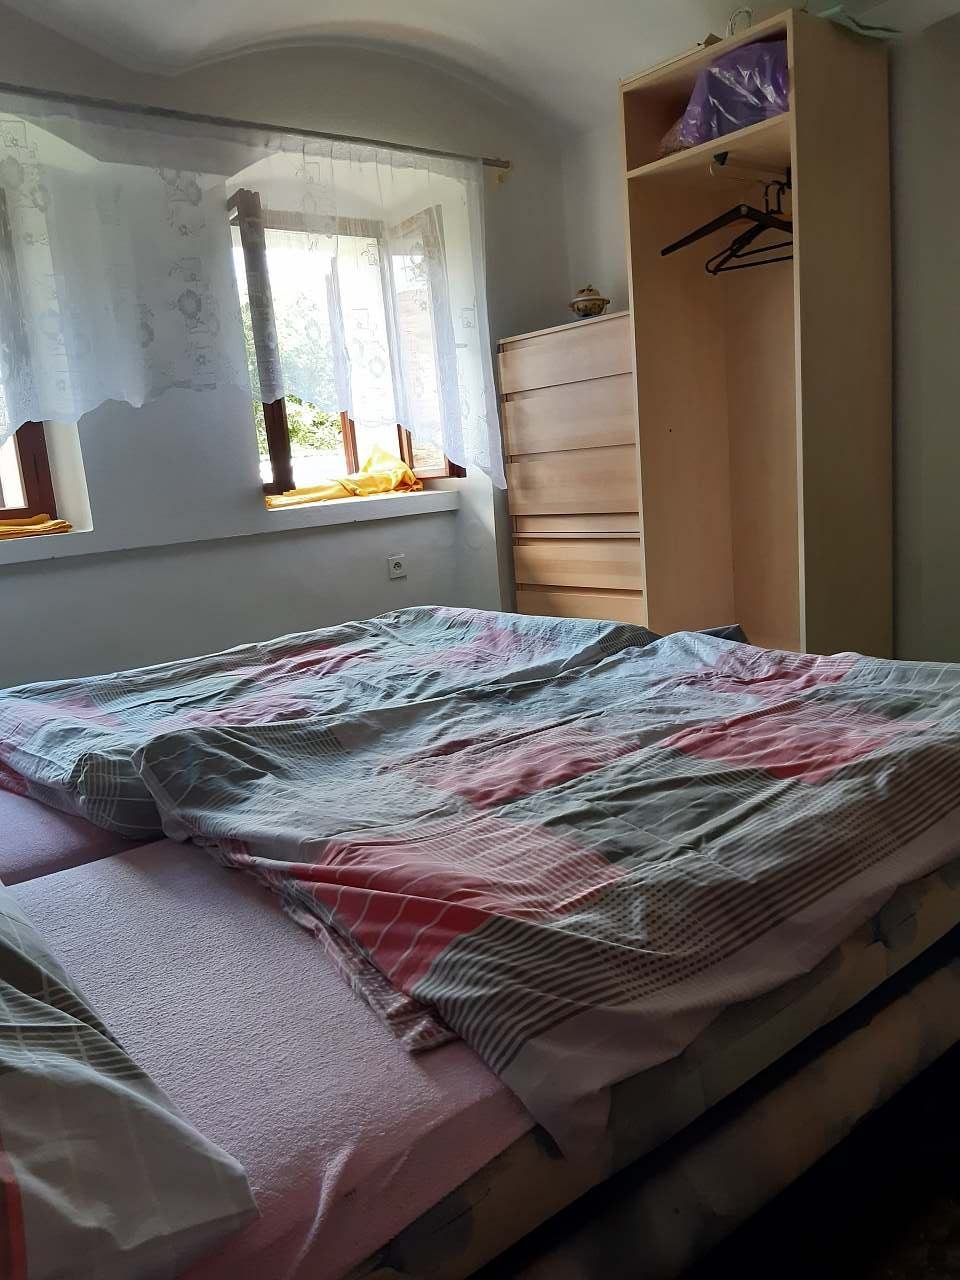 Ložnice č.1 - manželská postel a dětská palanda